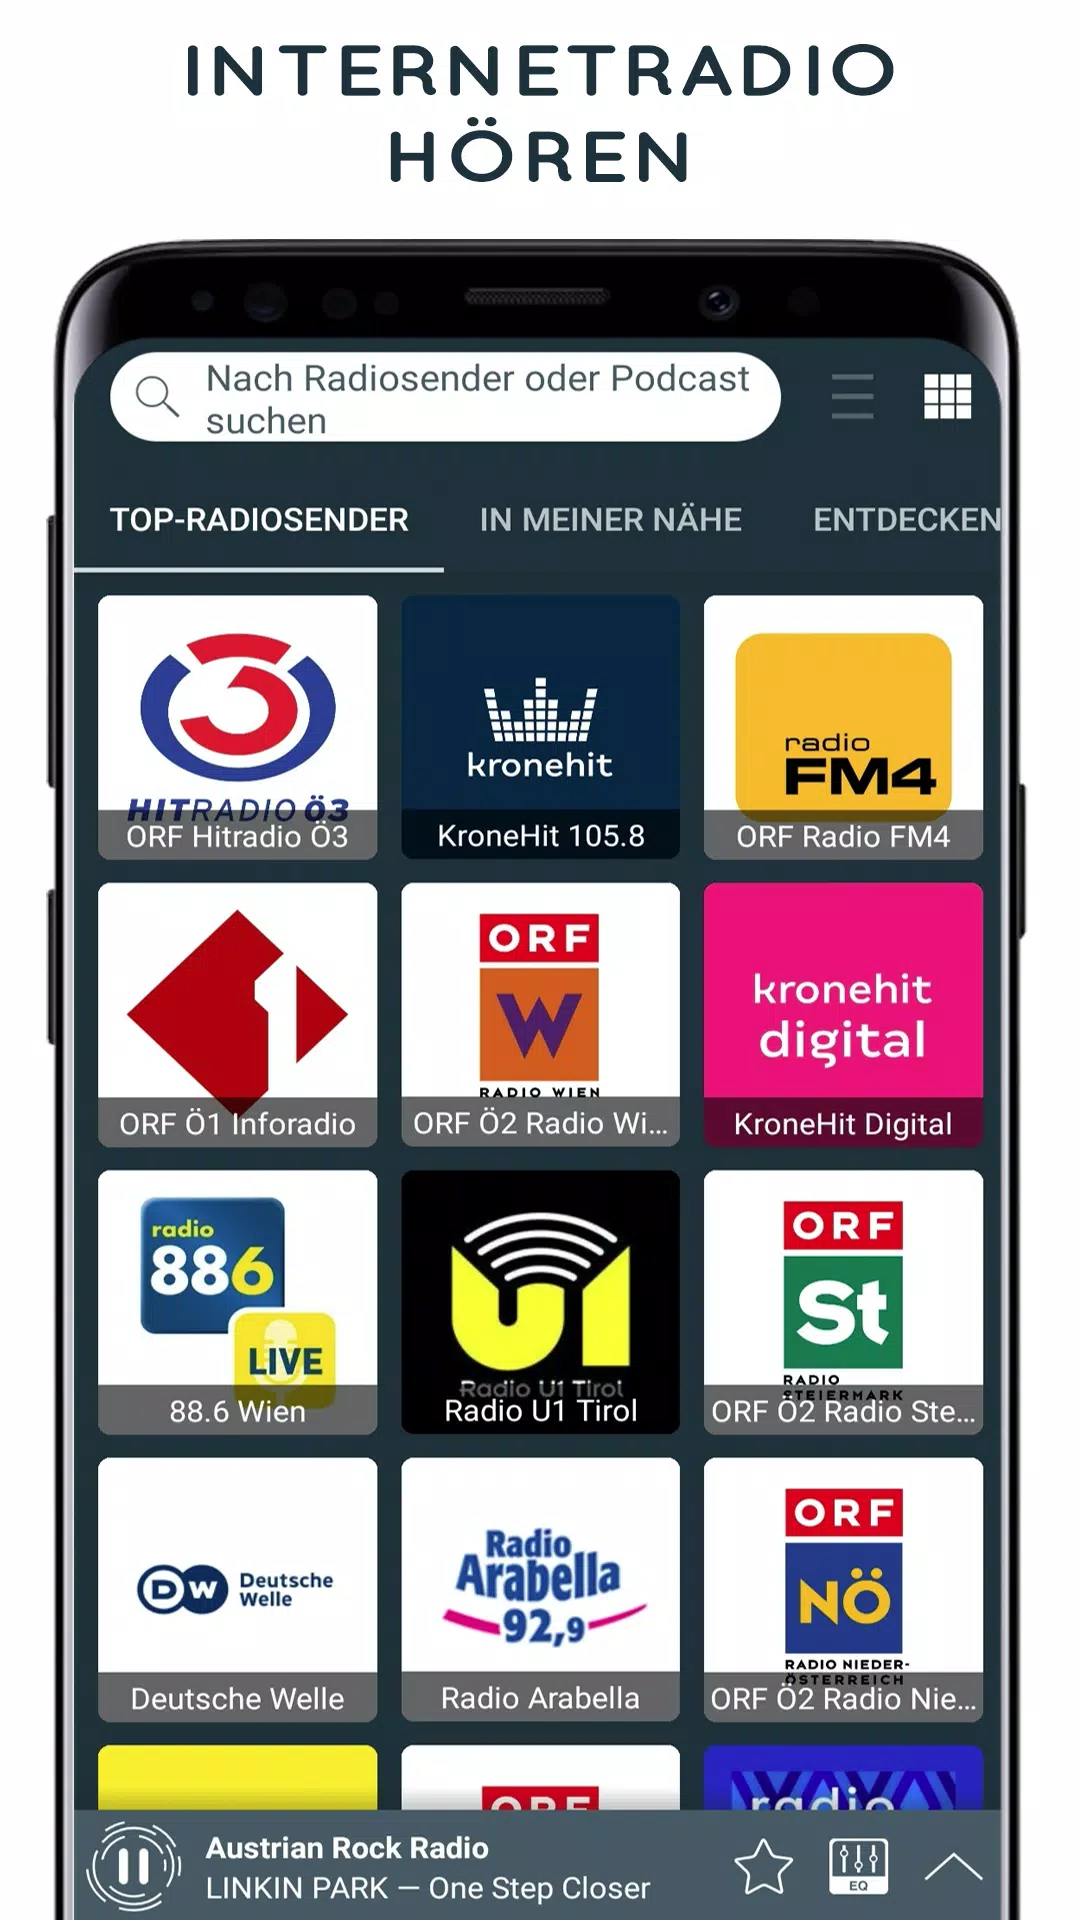 Radio Österreich Internetradio APK für Android herunterladen